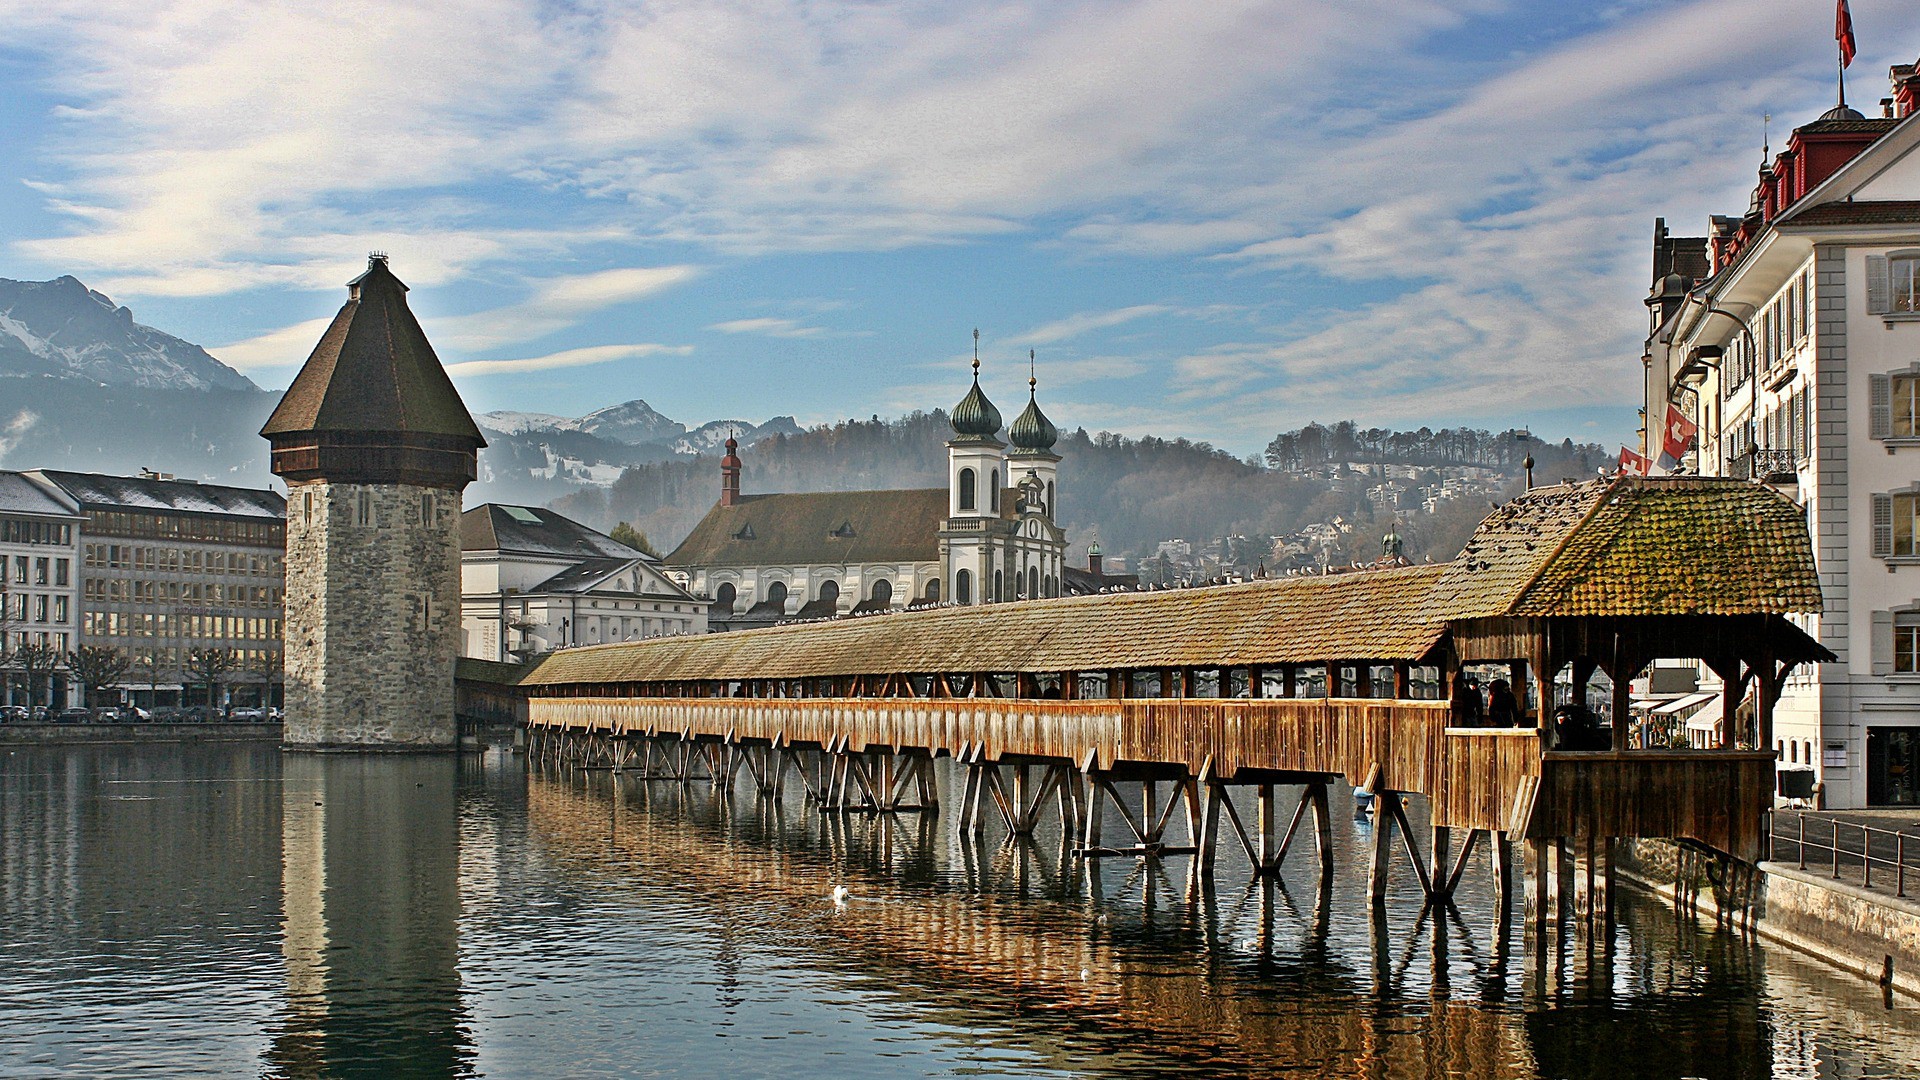 La ville de Lucerne (Photo: dlcau58/Flickr/CC BY-SA 2.0)